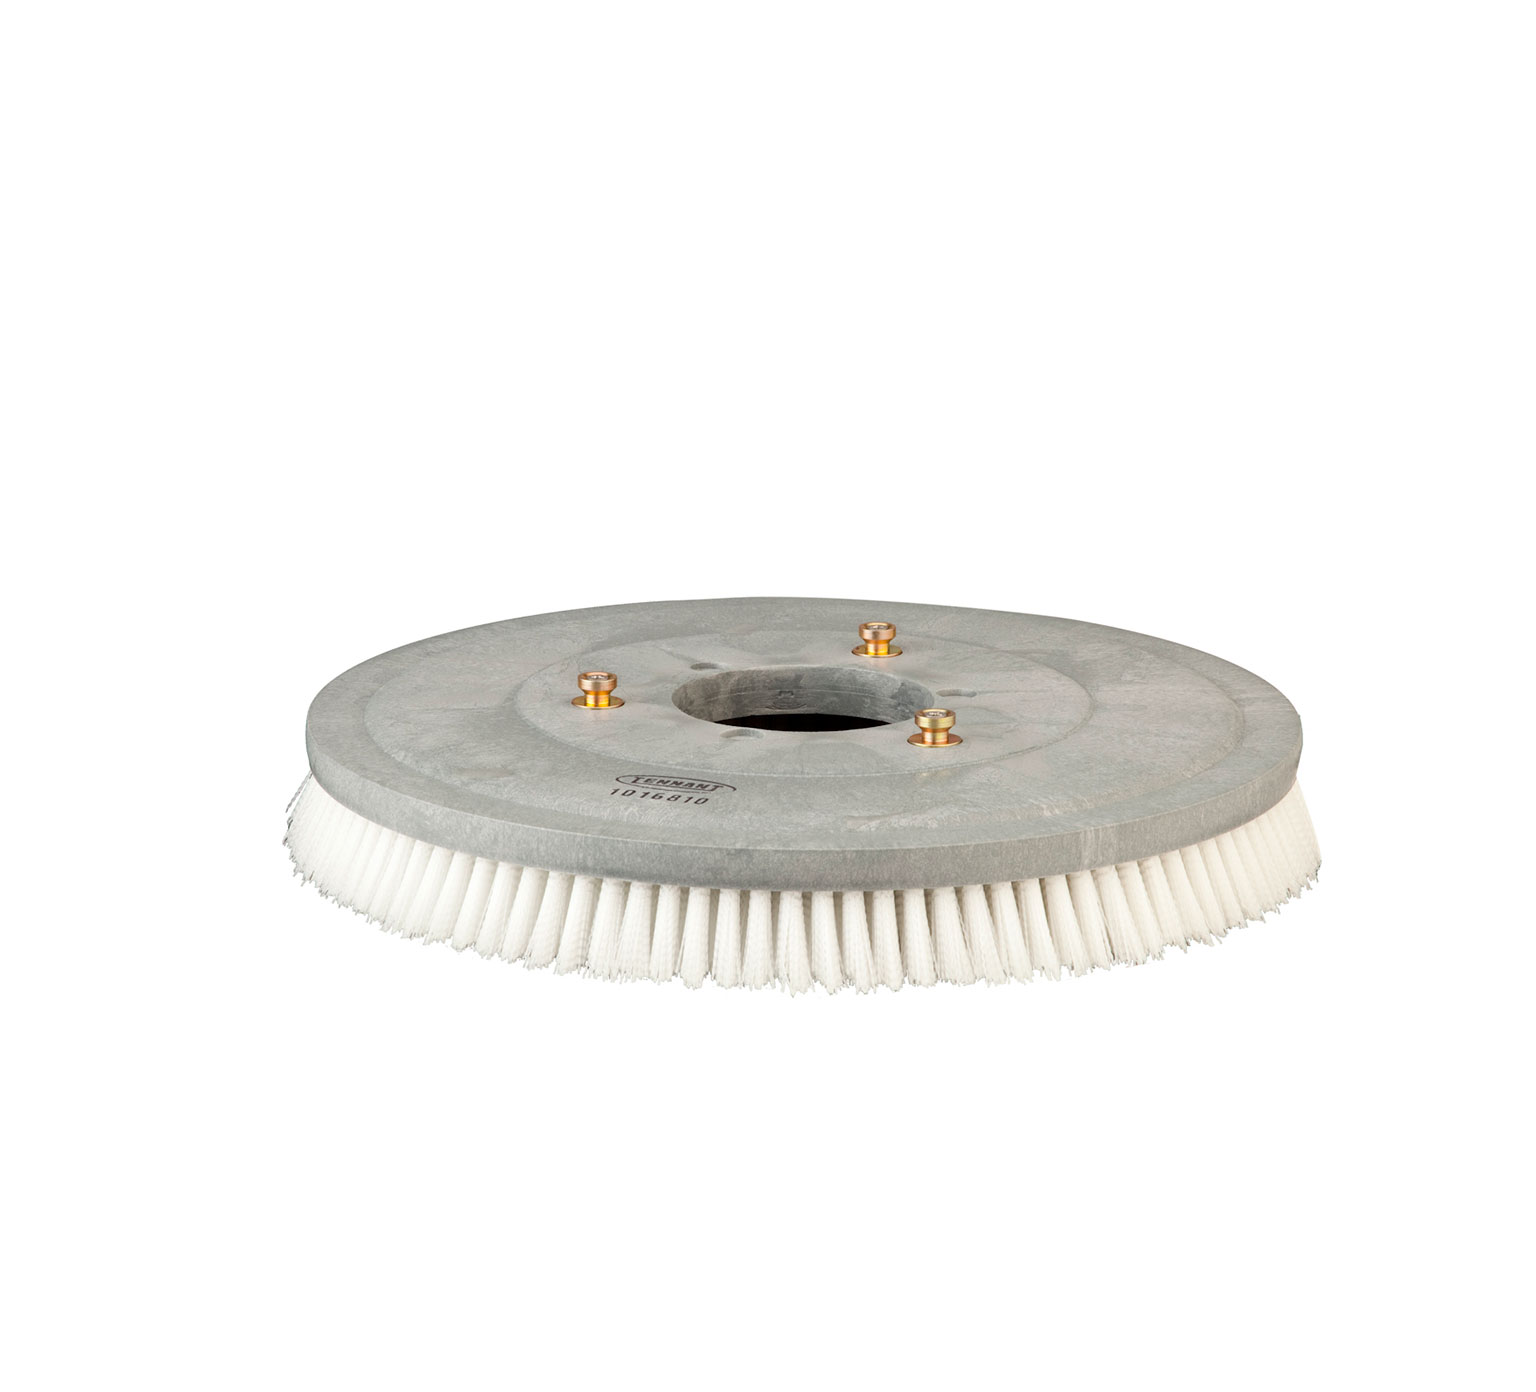 1016810 Assemblage de brosse de récurage avec disque abrasif en nylon &#8211;  20 po / 508 mm alt 1